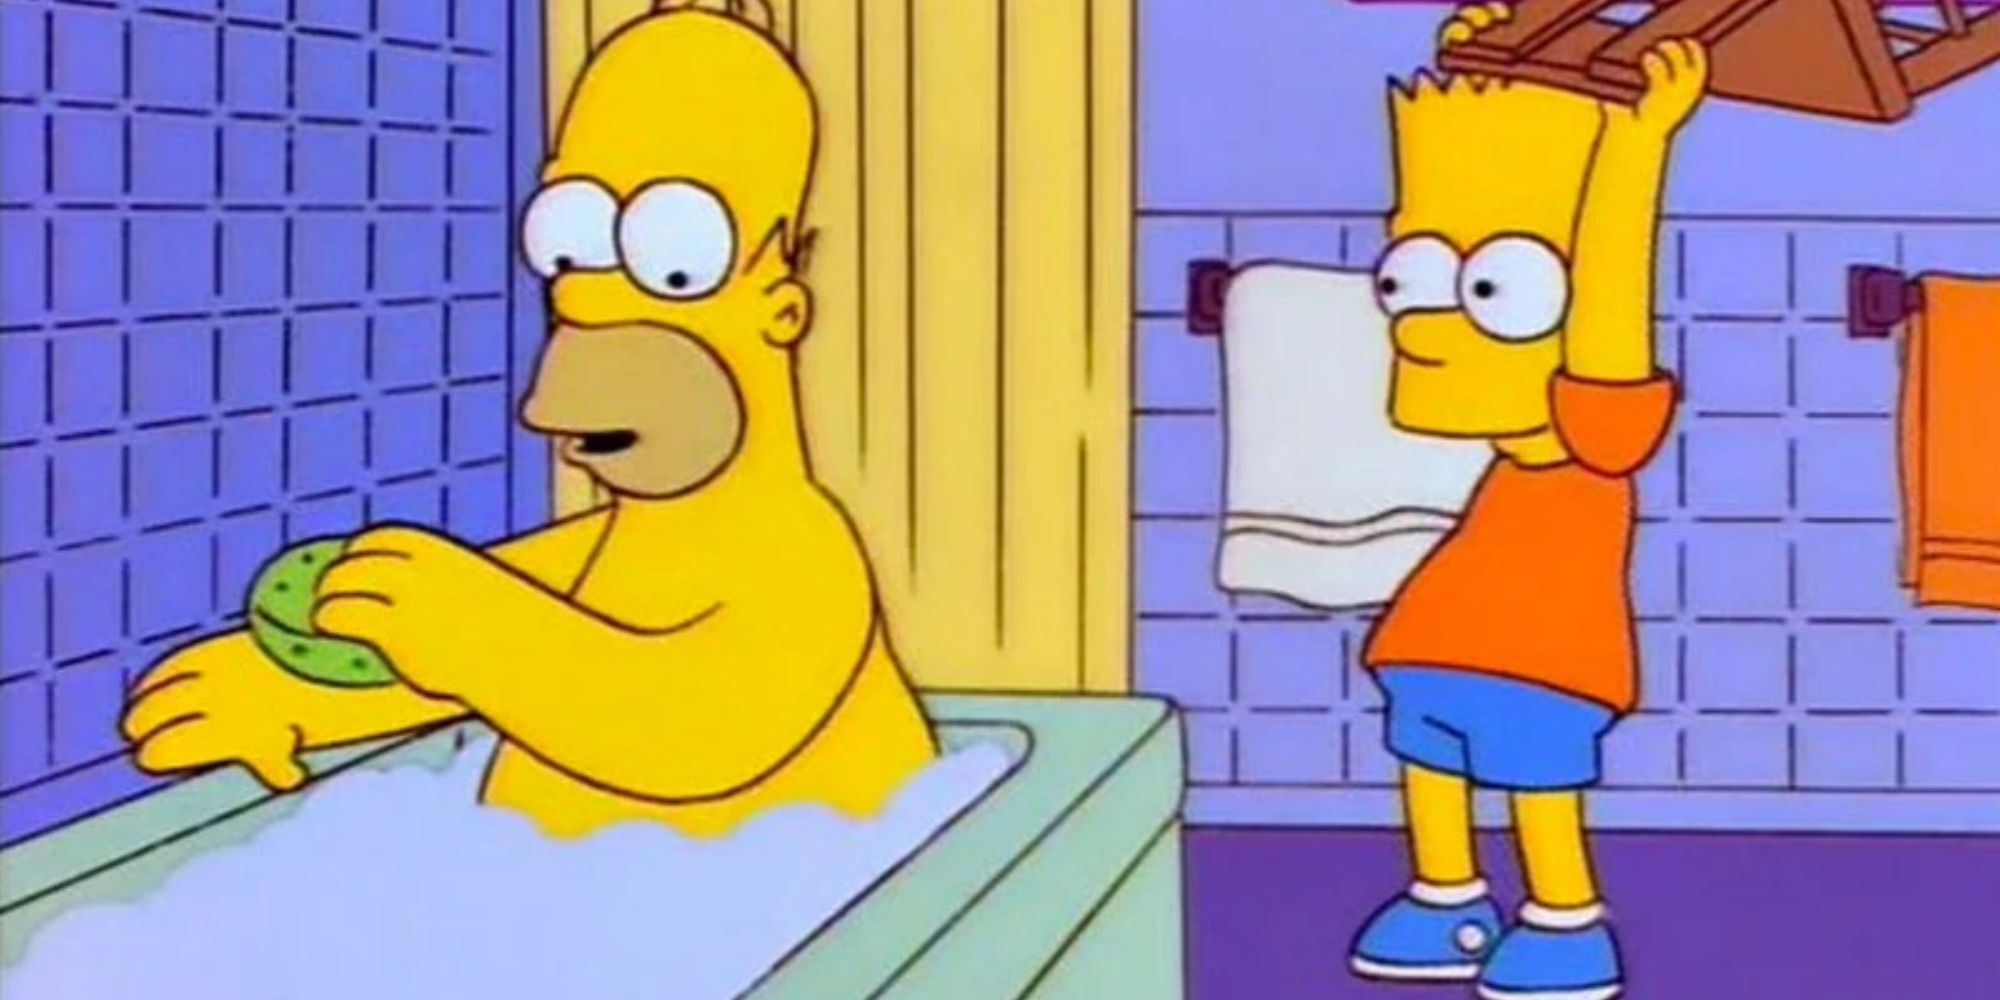 Bart Simpson ทุบเก้าอี้เหนือ Homer ในอ่างอาบน้ำ